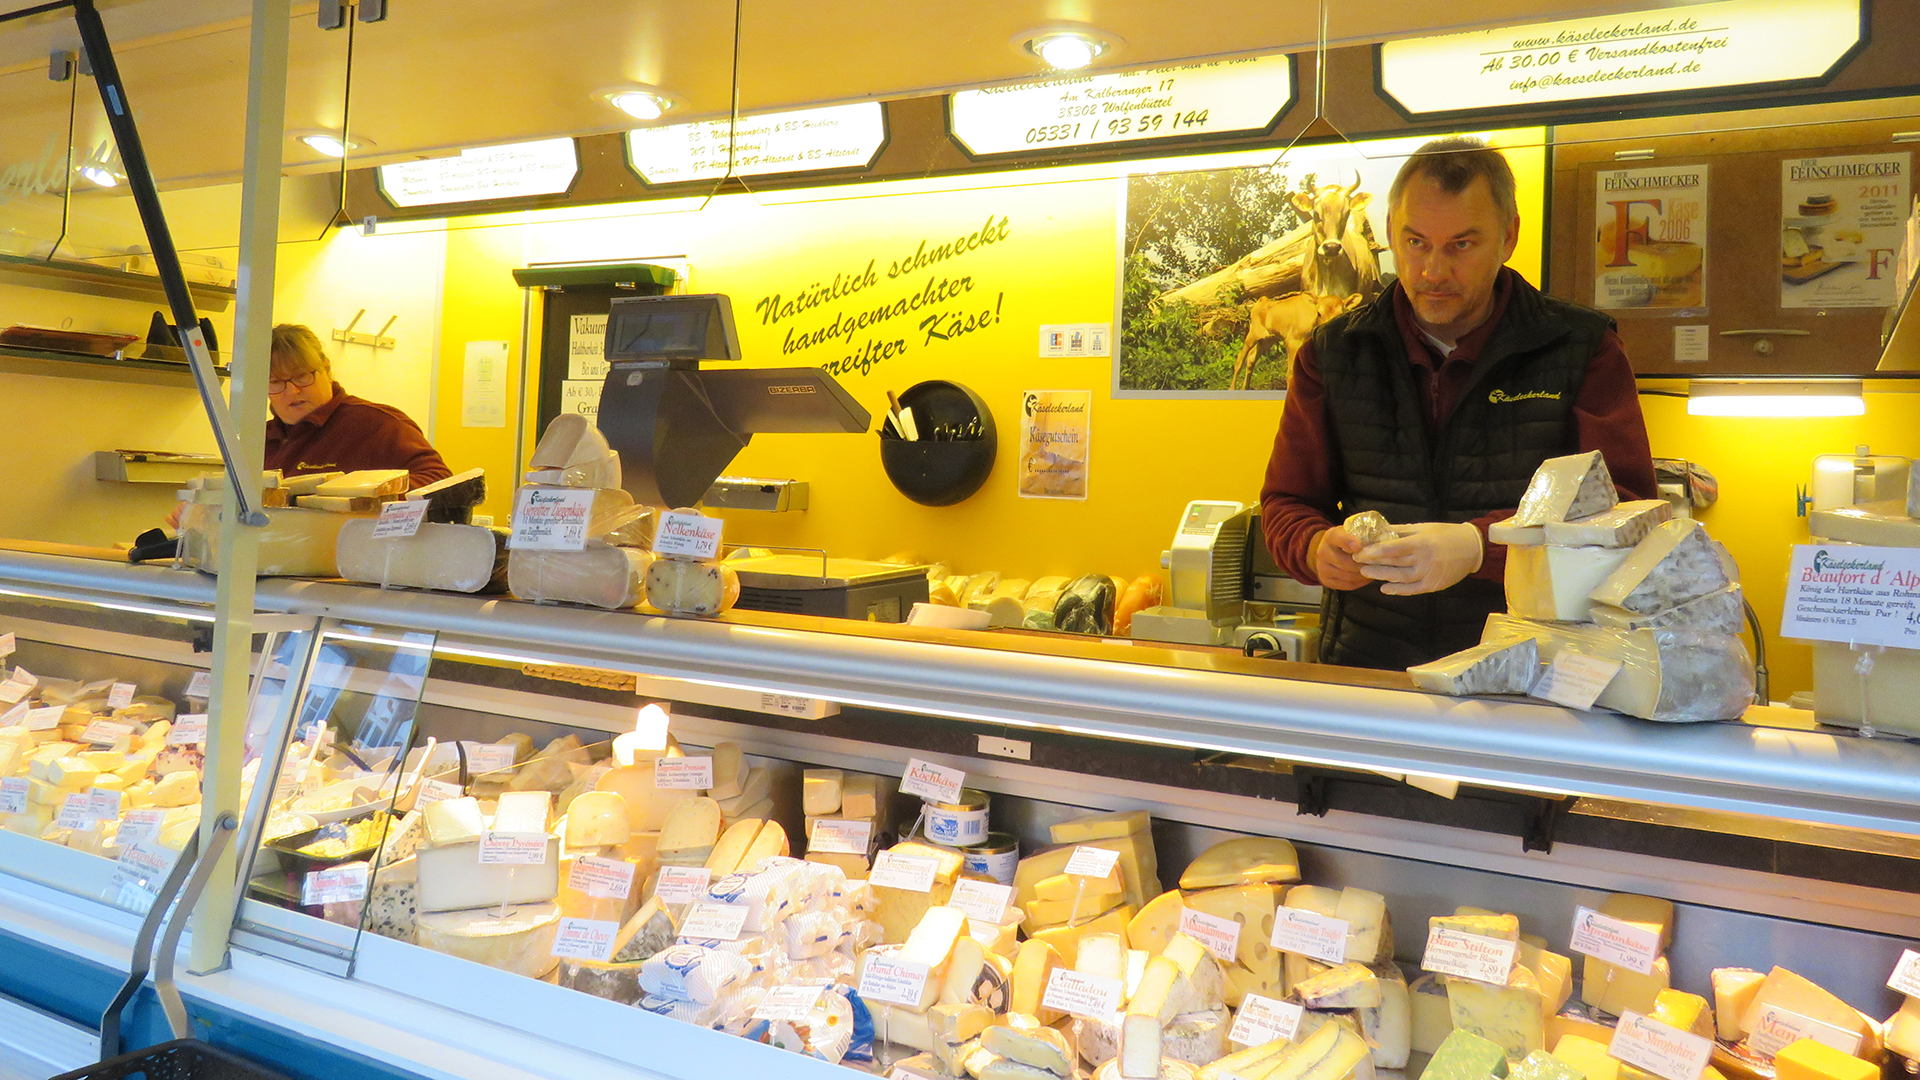 Peter van de Voort ist der Chef im Käseleckerland